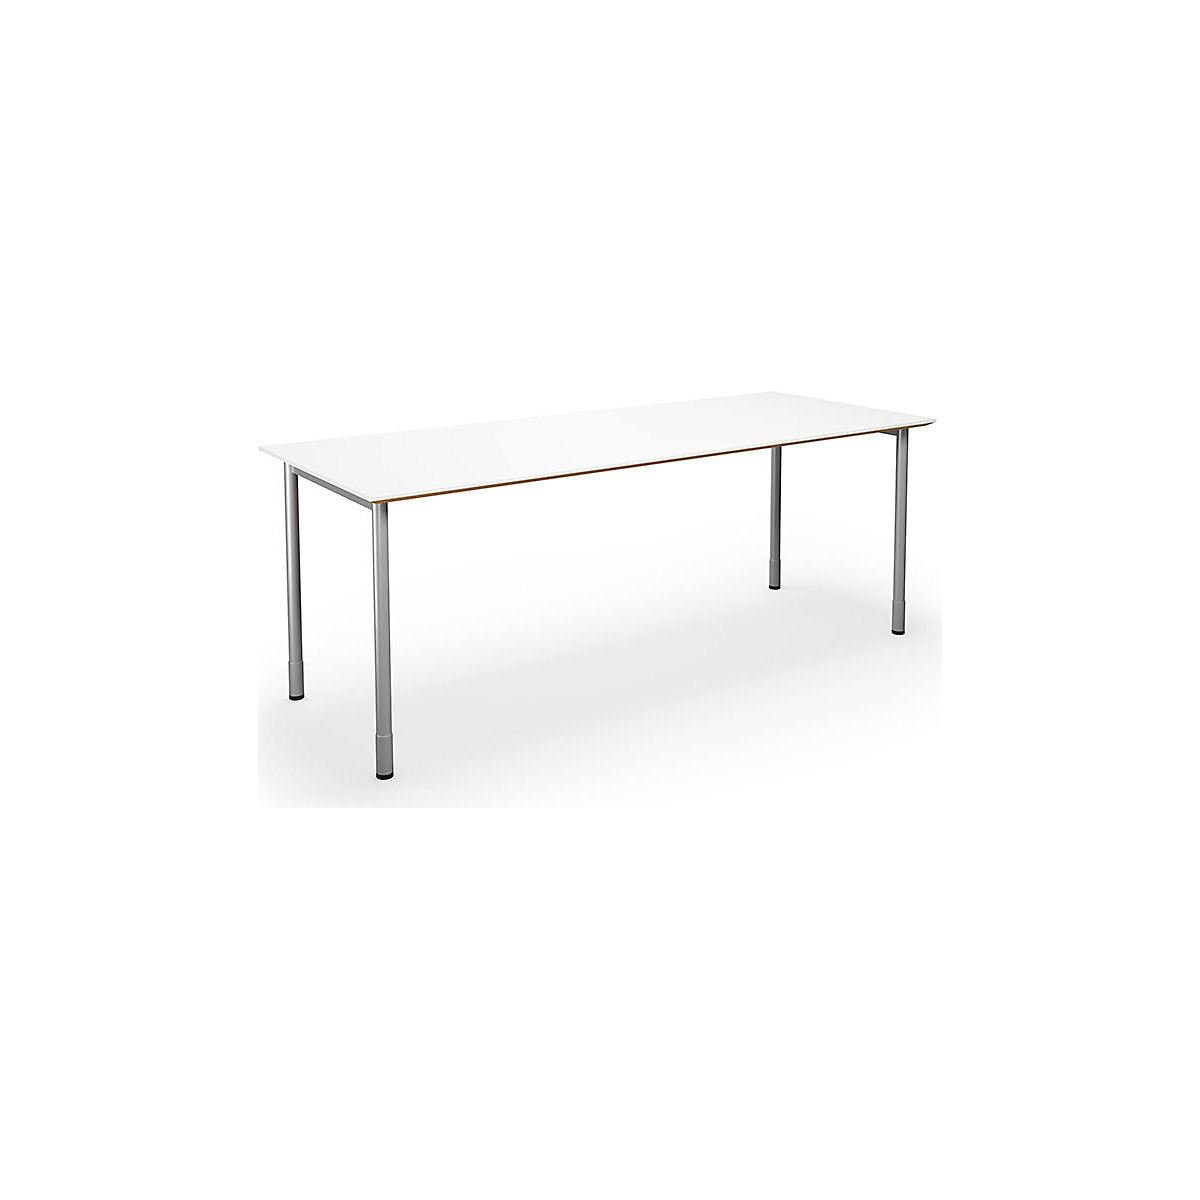 DUO-C Trend multi-purpose desk, straight tabletop, WxD 1800 x 800 mm, white, silver-5